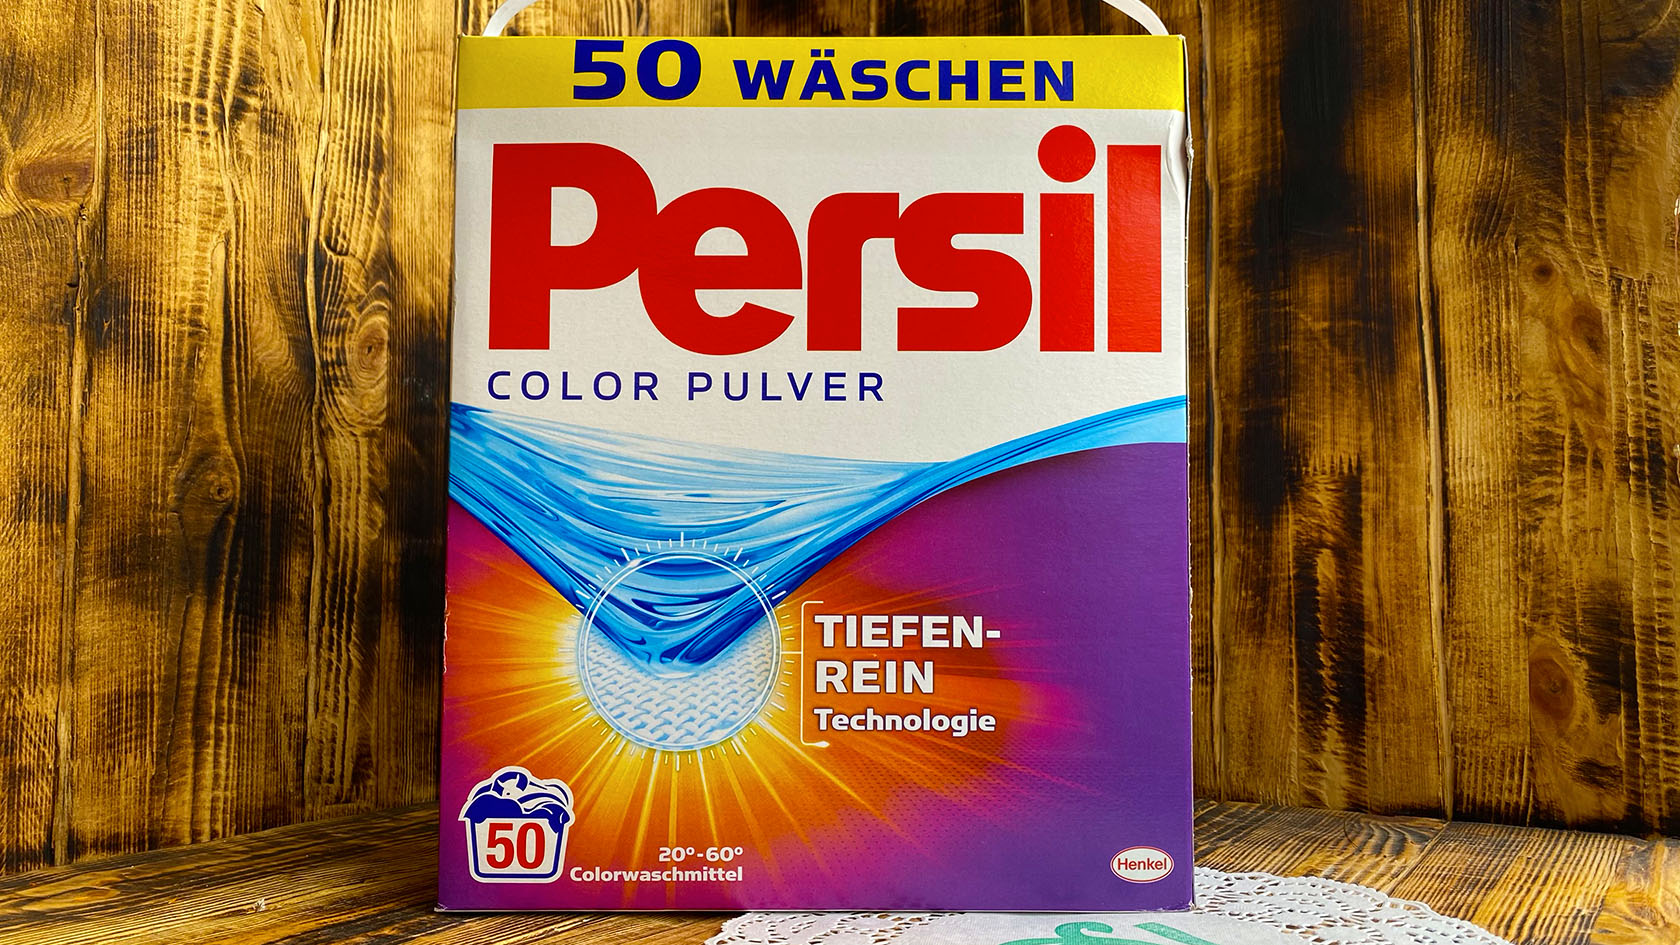 Стиральный порошок Persil Color Pulver производство Германии 3,25 кг